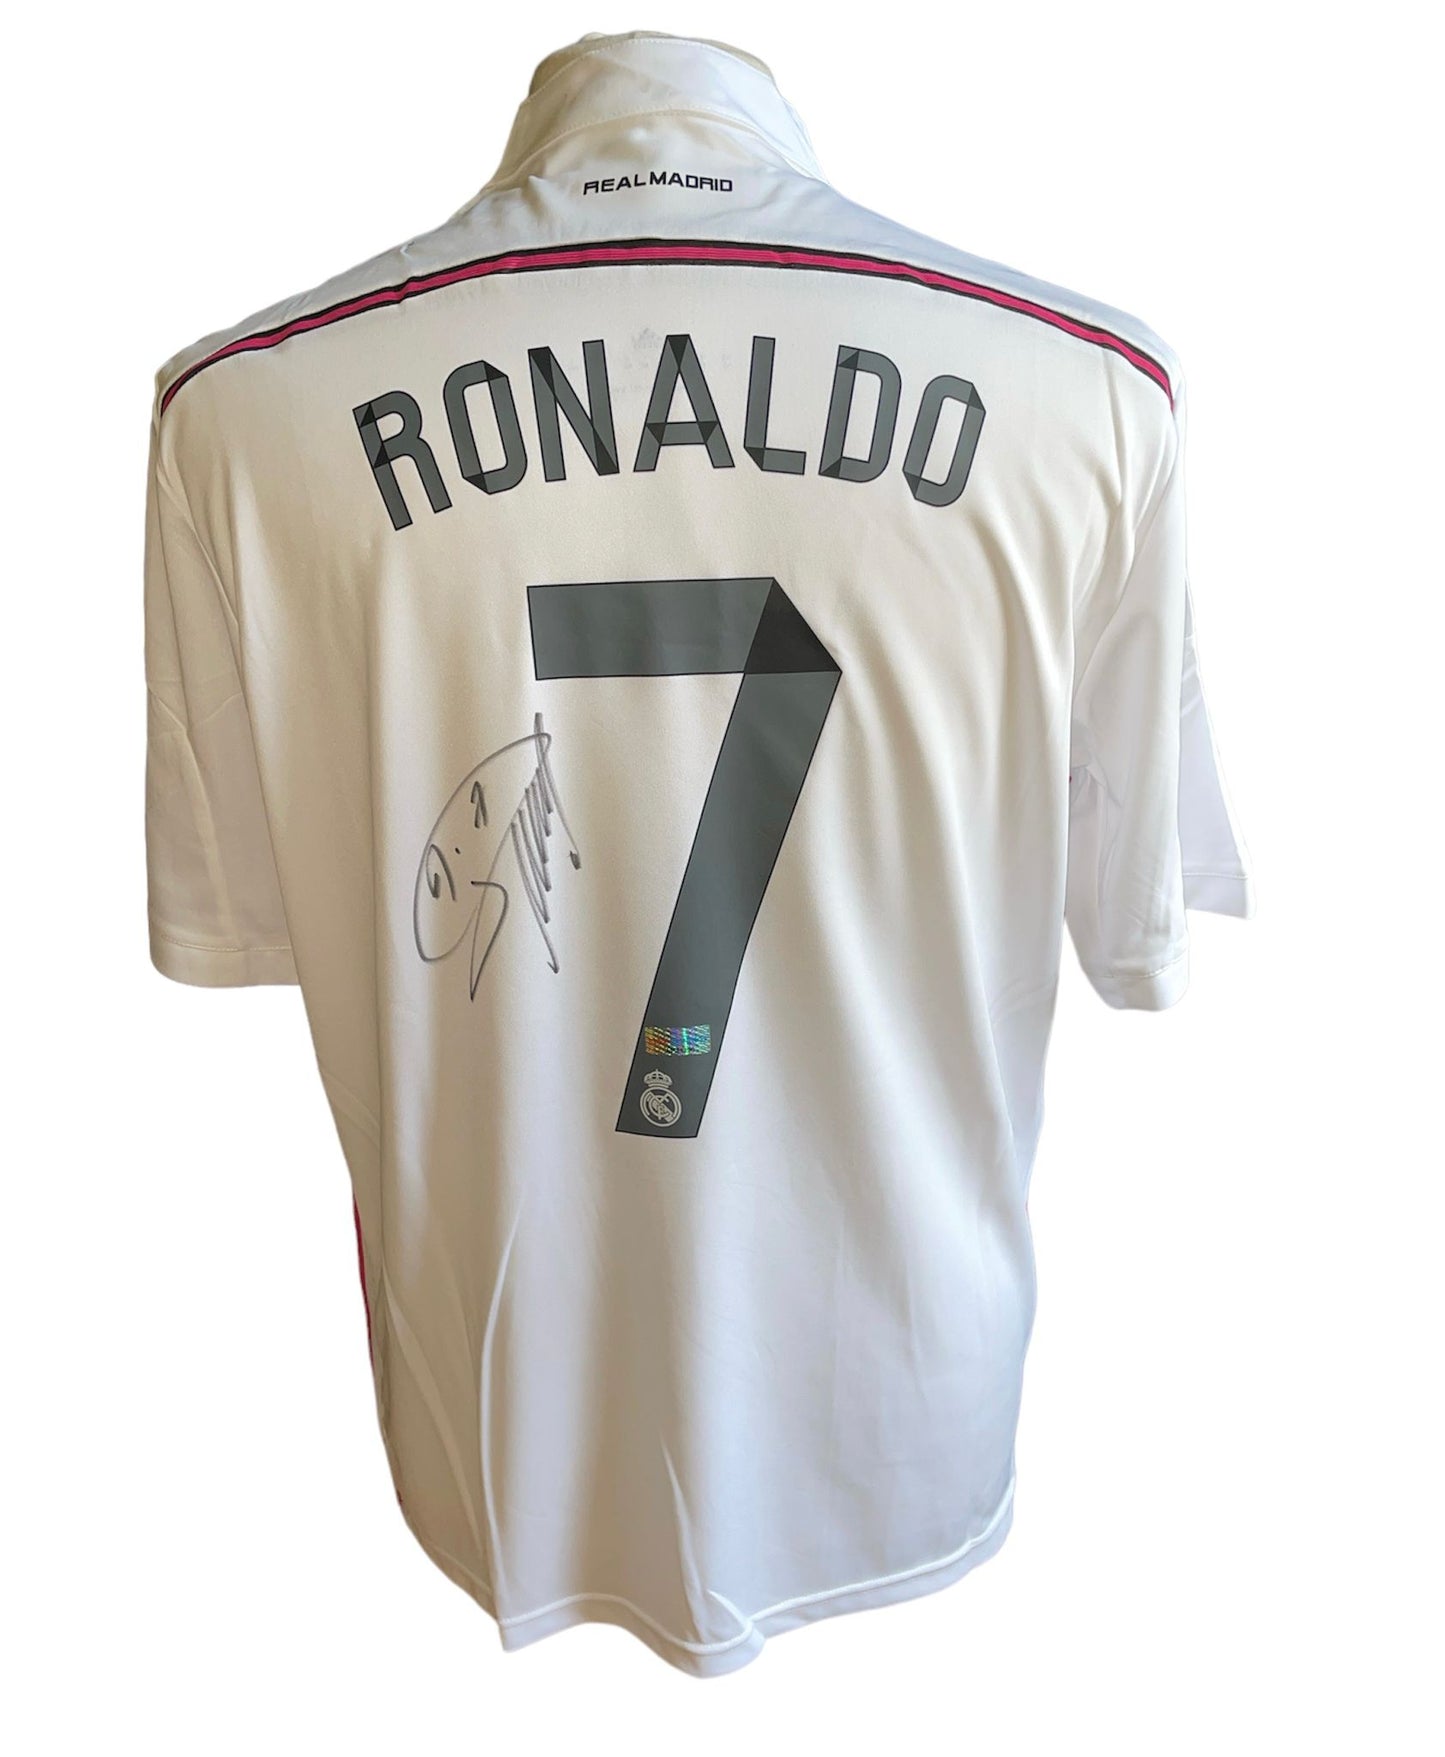 Cristiano Ronaldo gesigneerd Real Madrid 2014-2015 shirt met certificaat